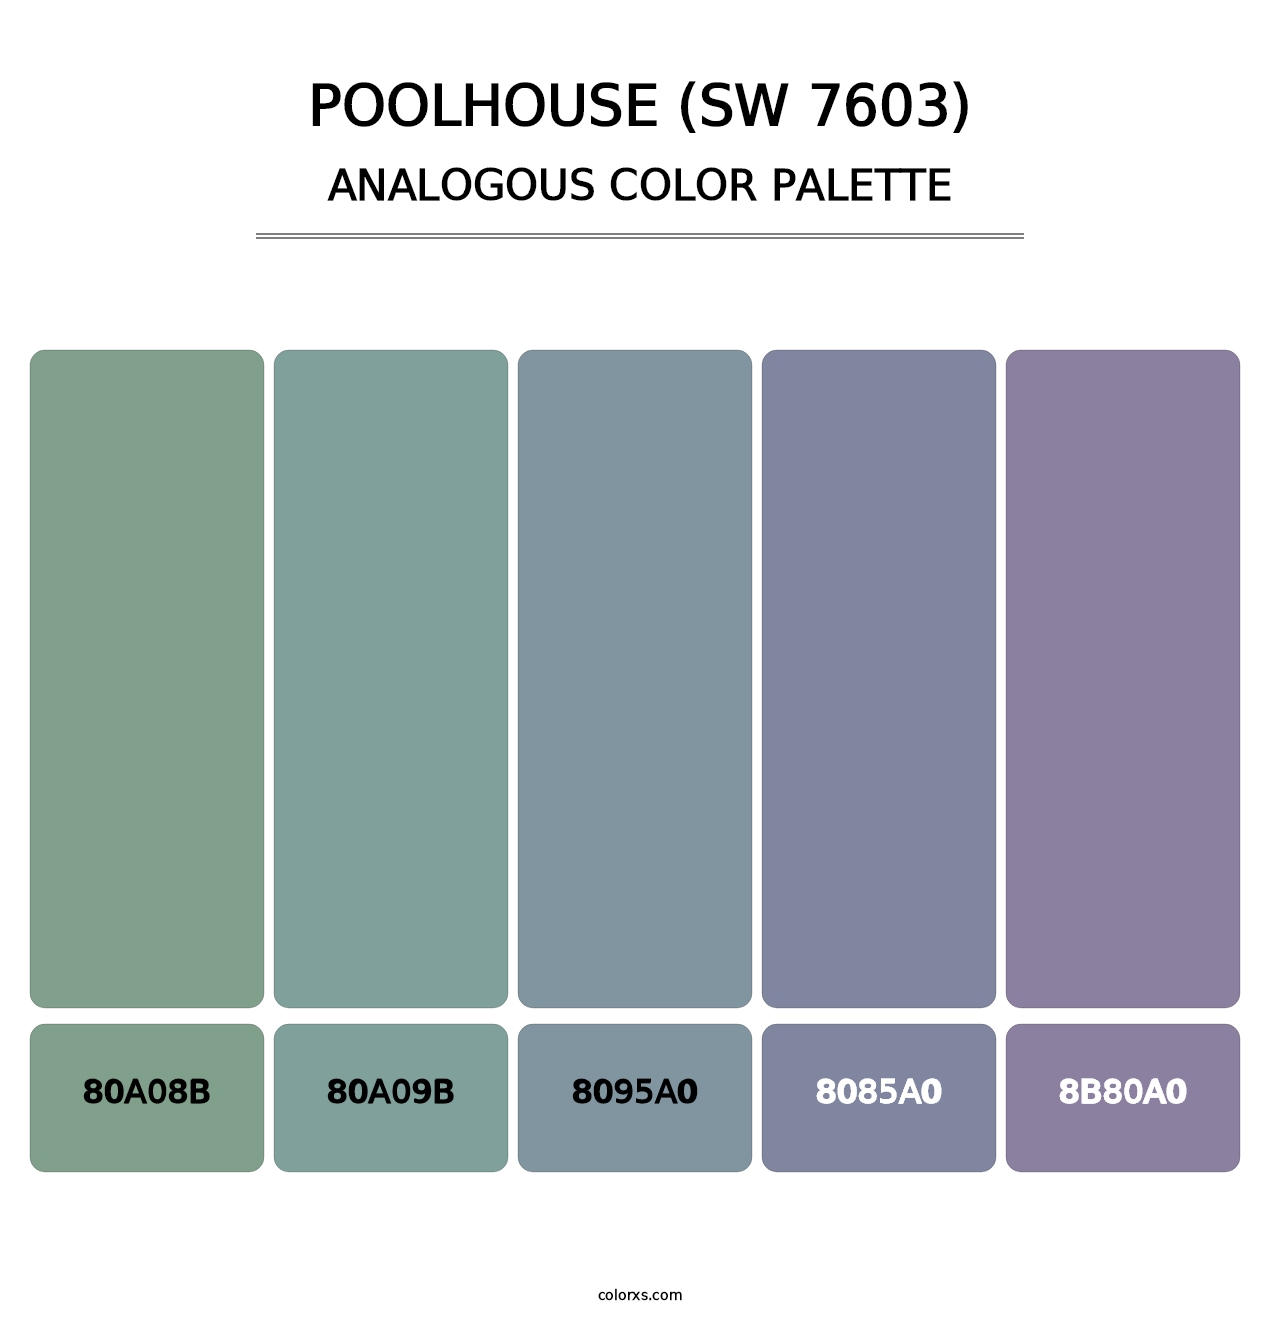 Poolhouse (SW 7603) - Analogous Color Palette